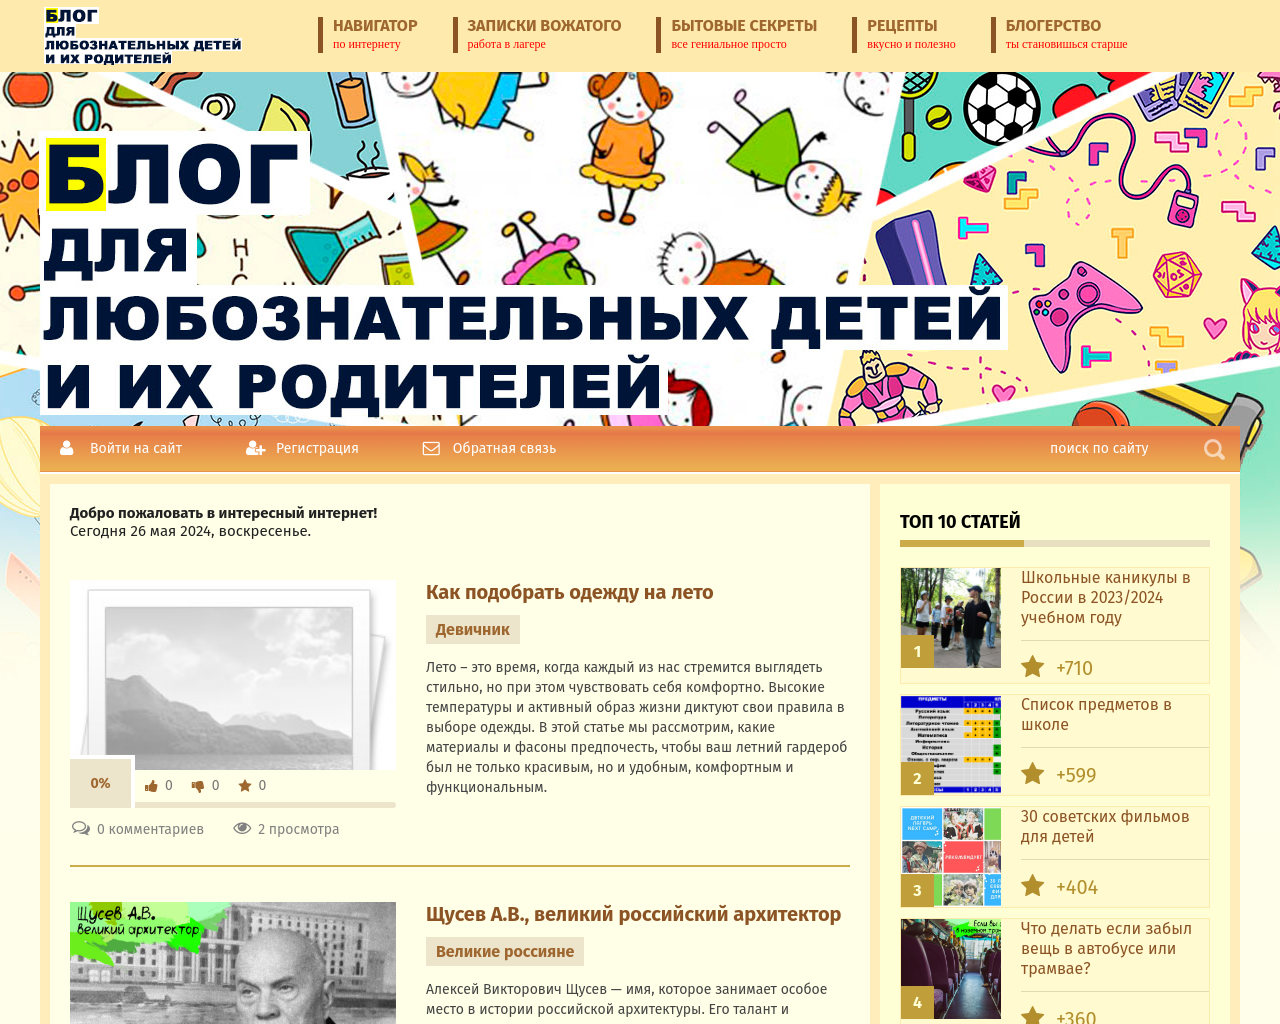 bobrikov.net